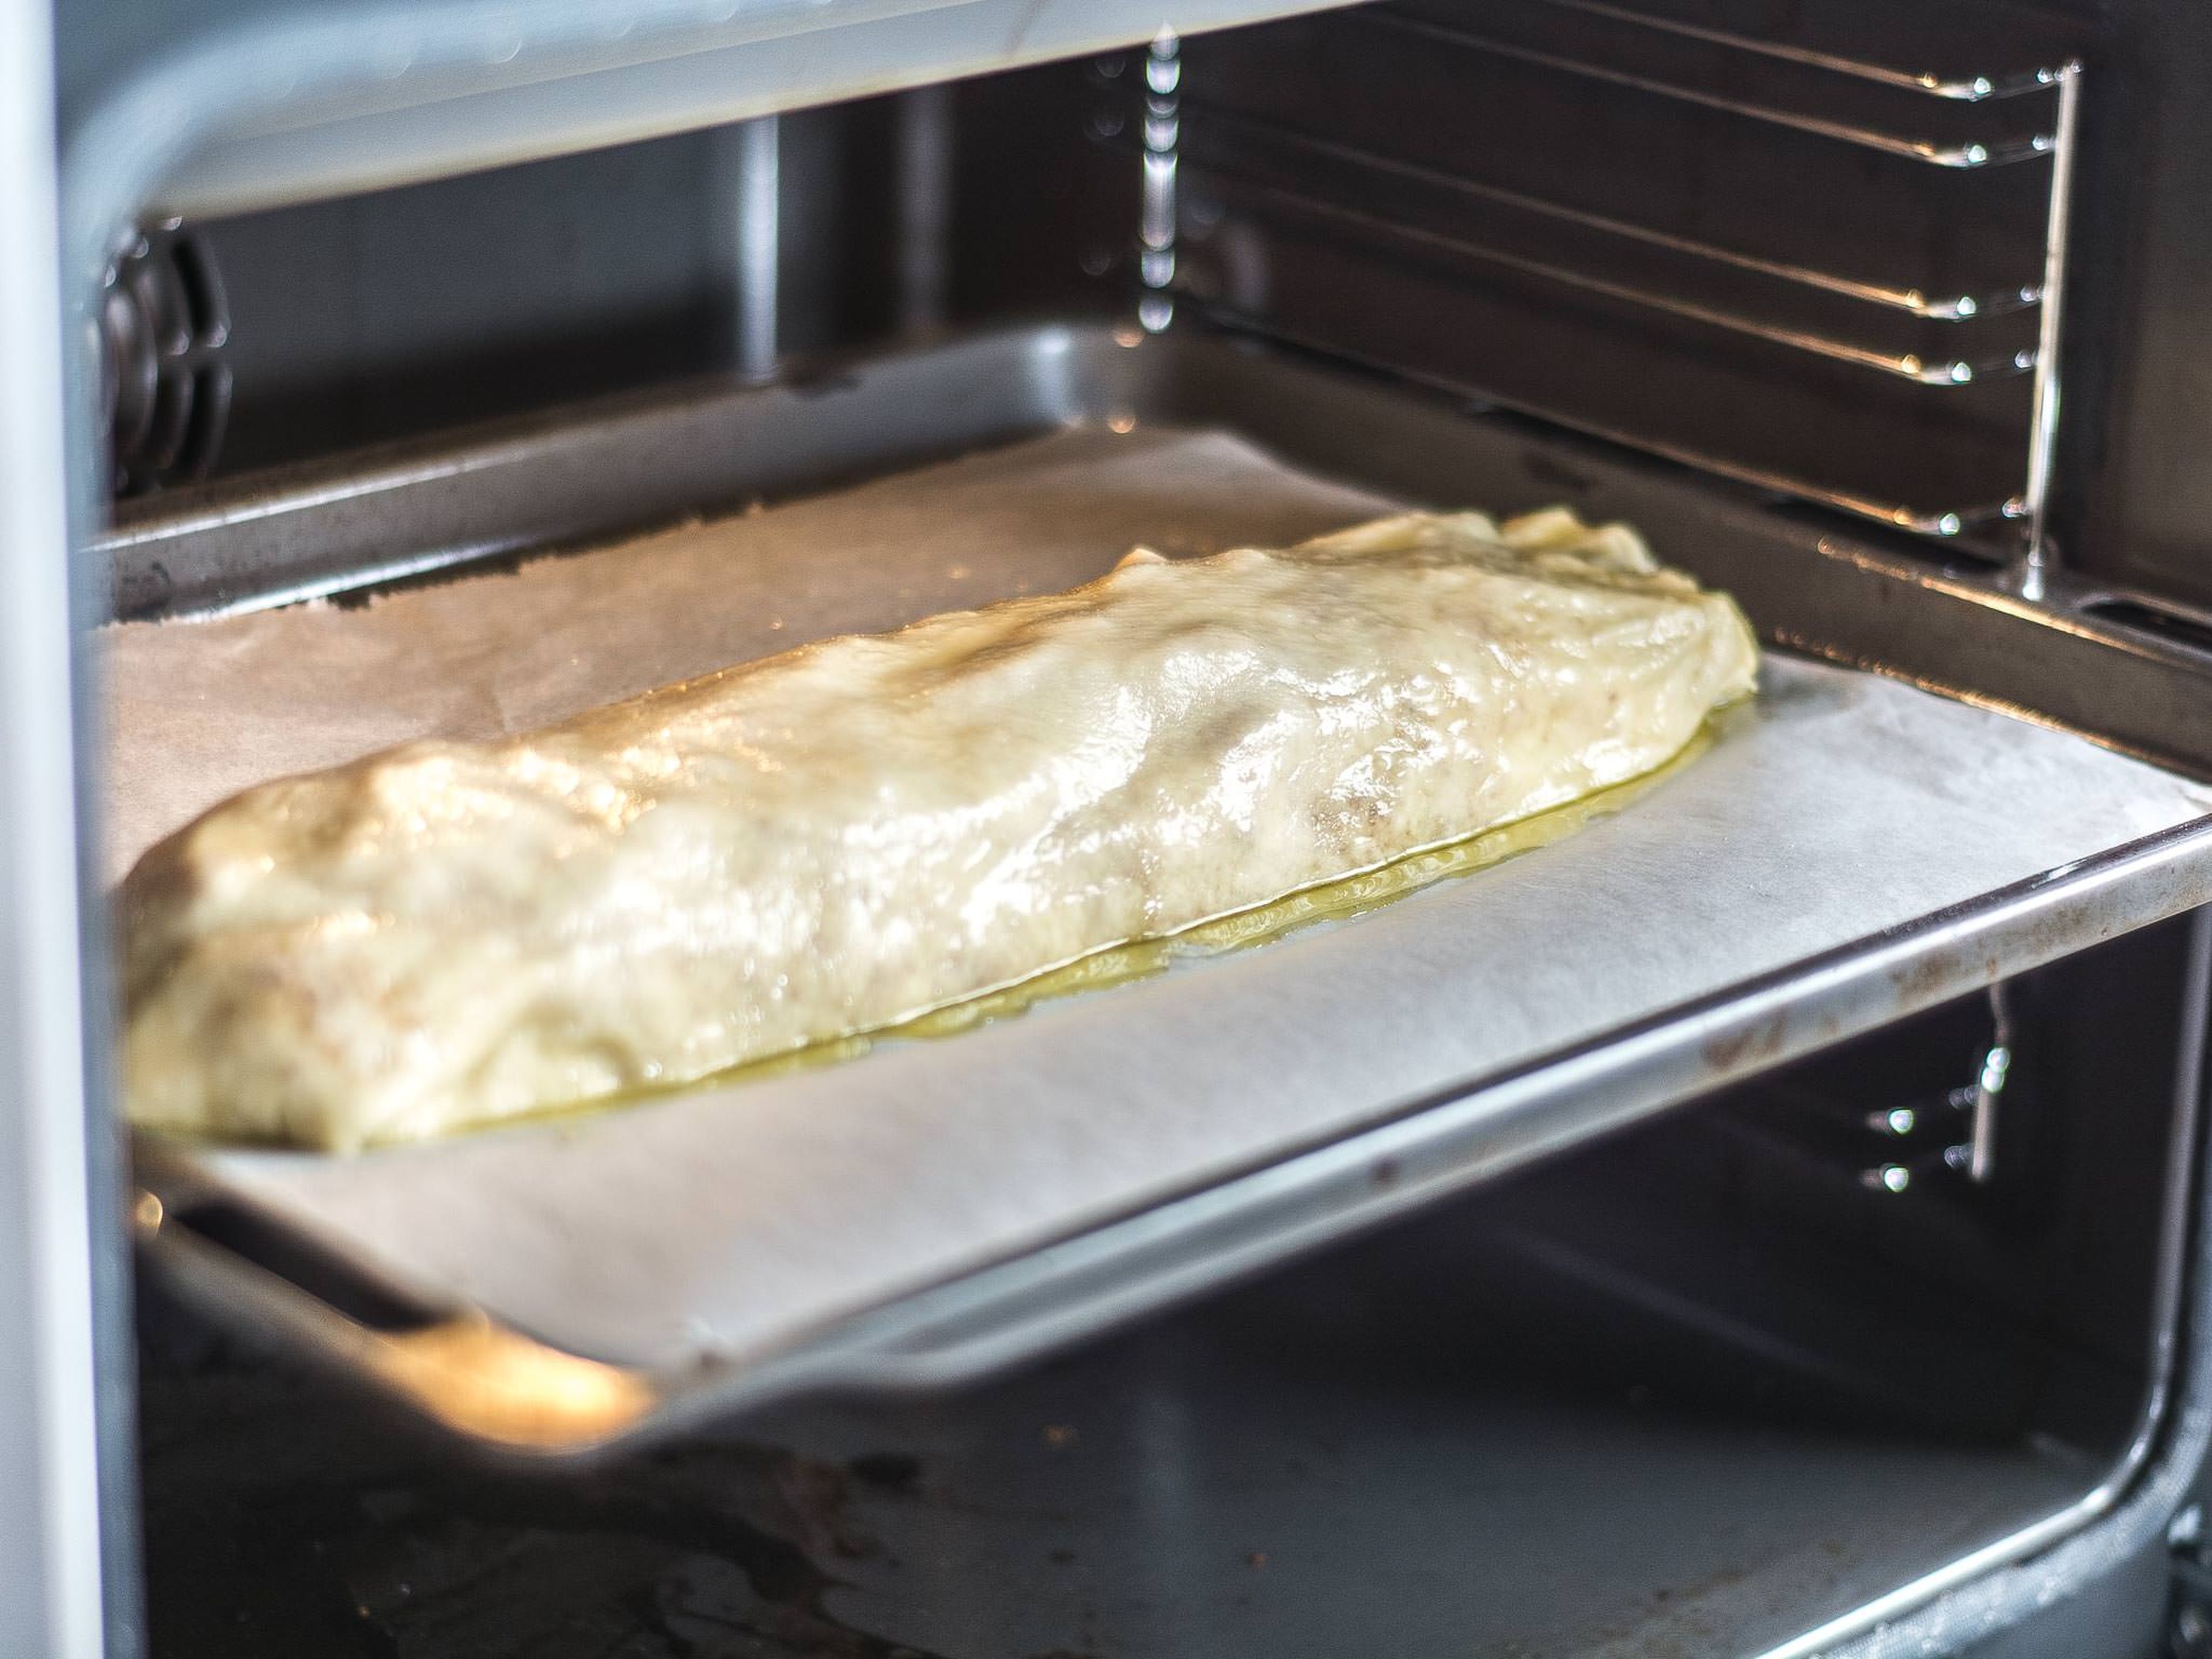 Oberfläche mit zerlassener Butter bepinseln und sofort im vorgeheizten Ofen bei 180°C ca. 20 – 25 Min. goldgelb backen. Zum Servieren mit Puderzucker bestäuben und mit Vanillesoße reichen.